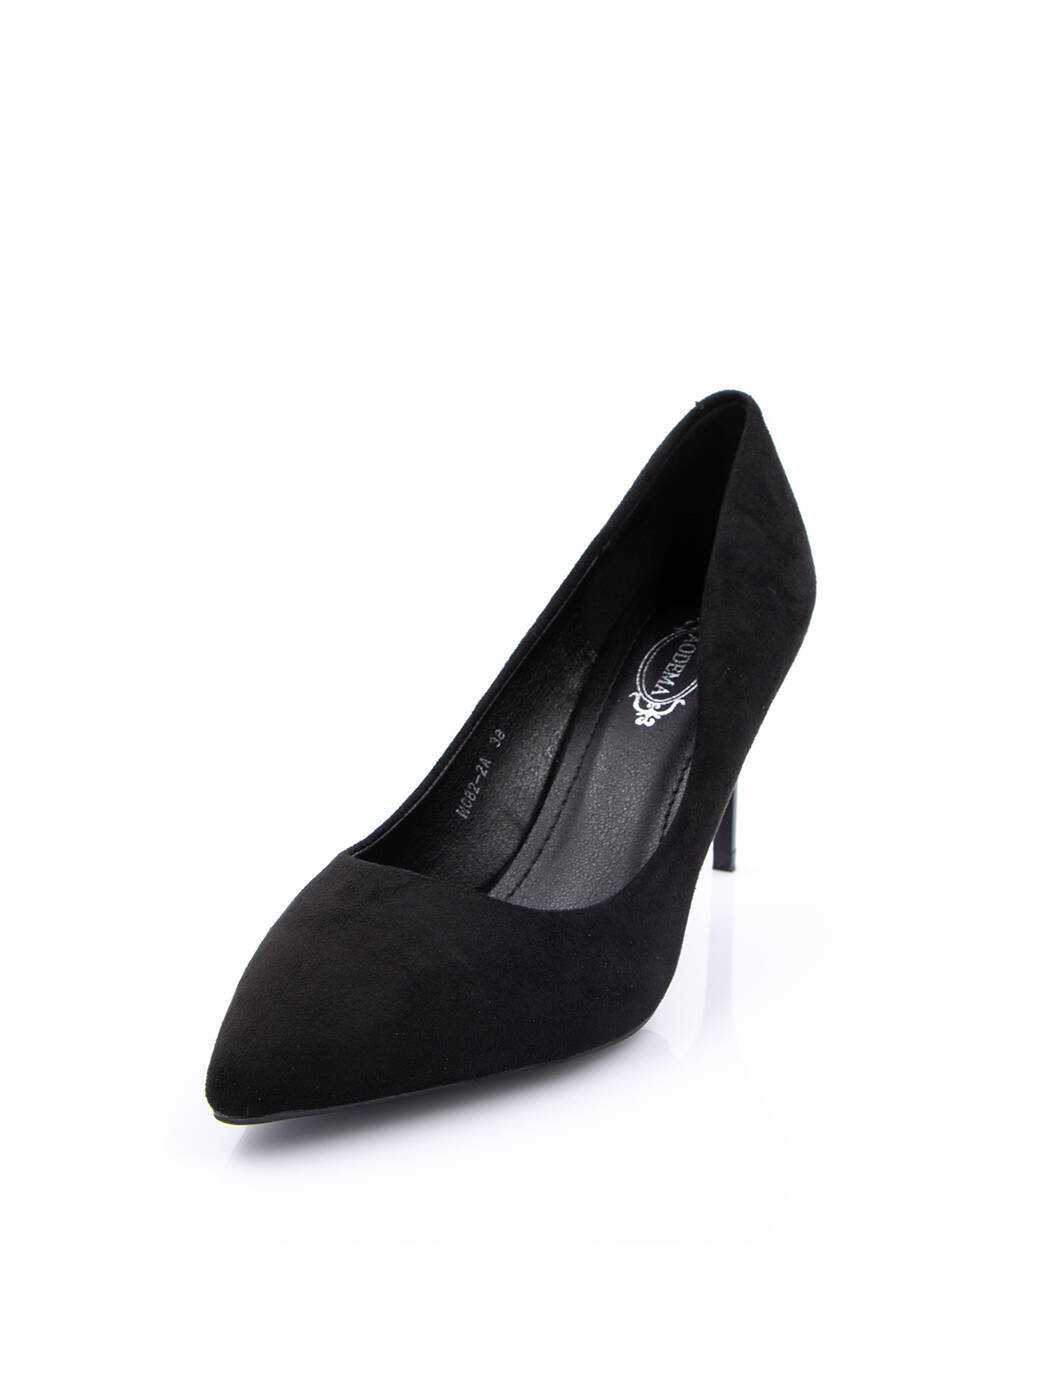 Туфли женские черные экозамша каблук шпилька демисезон от производителя AM вид 0